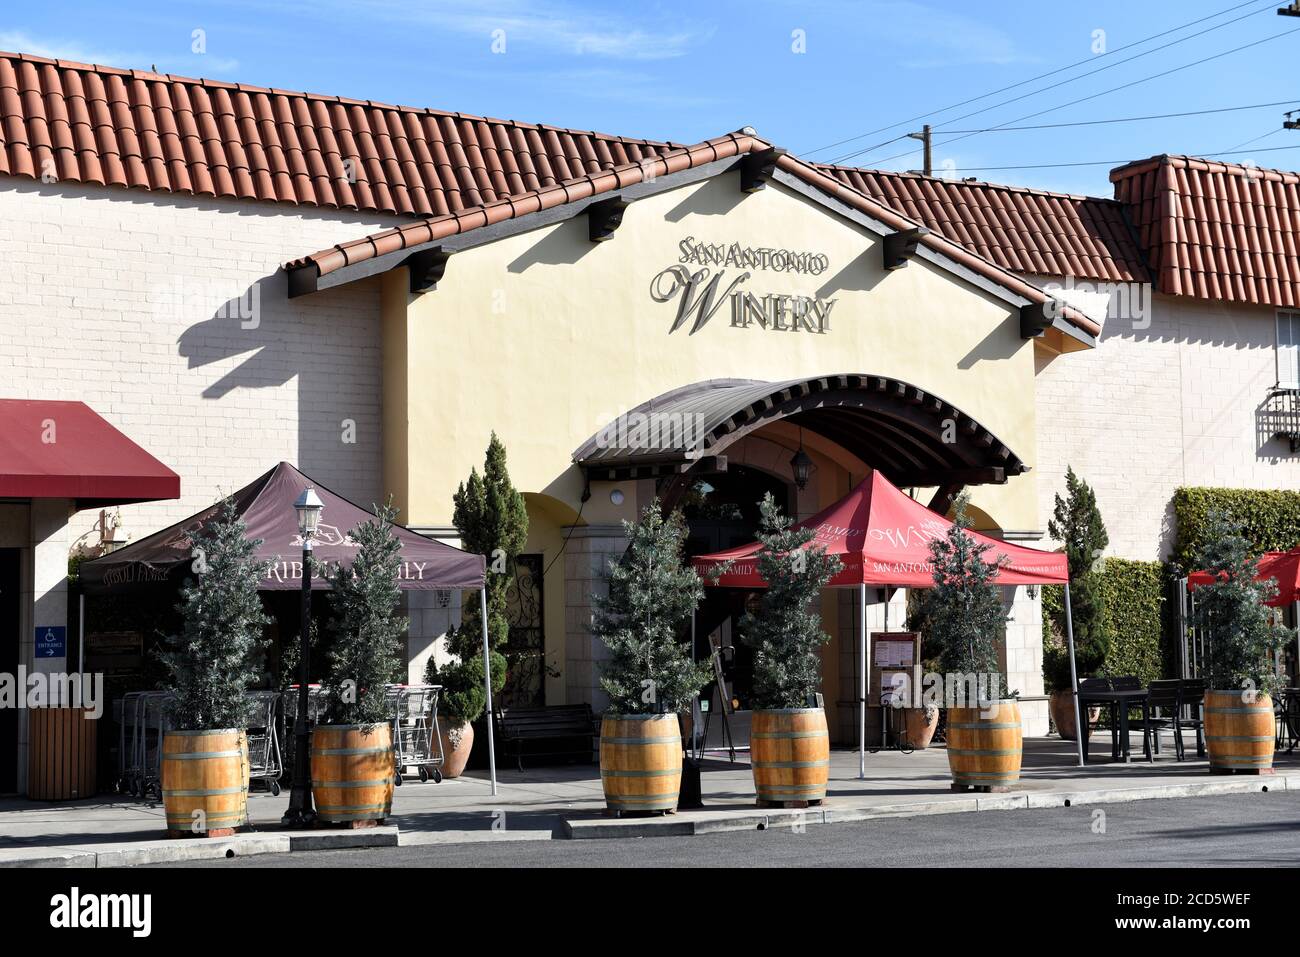 LOS ANGELES, KALIFORNIEN - 12. FEB 2020: Der San Antonio Winery Tasting Room im Stadtteil Lincoln Heights der Stadt ist seitdem in Betrieb Stockfoto